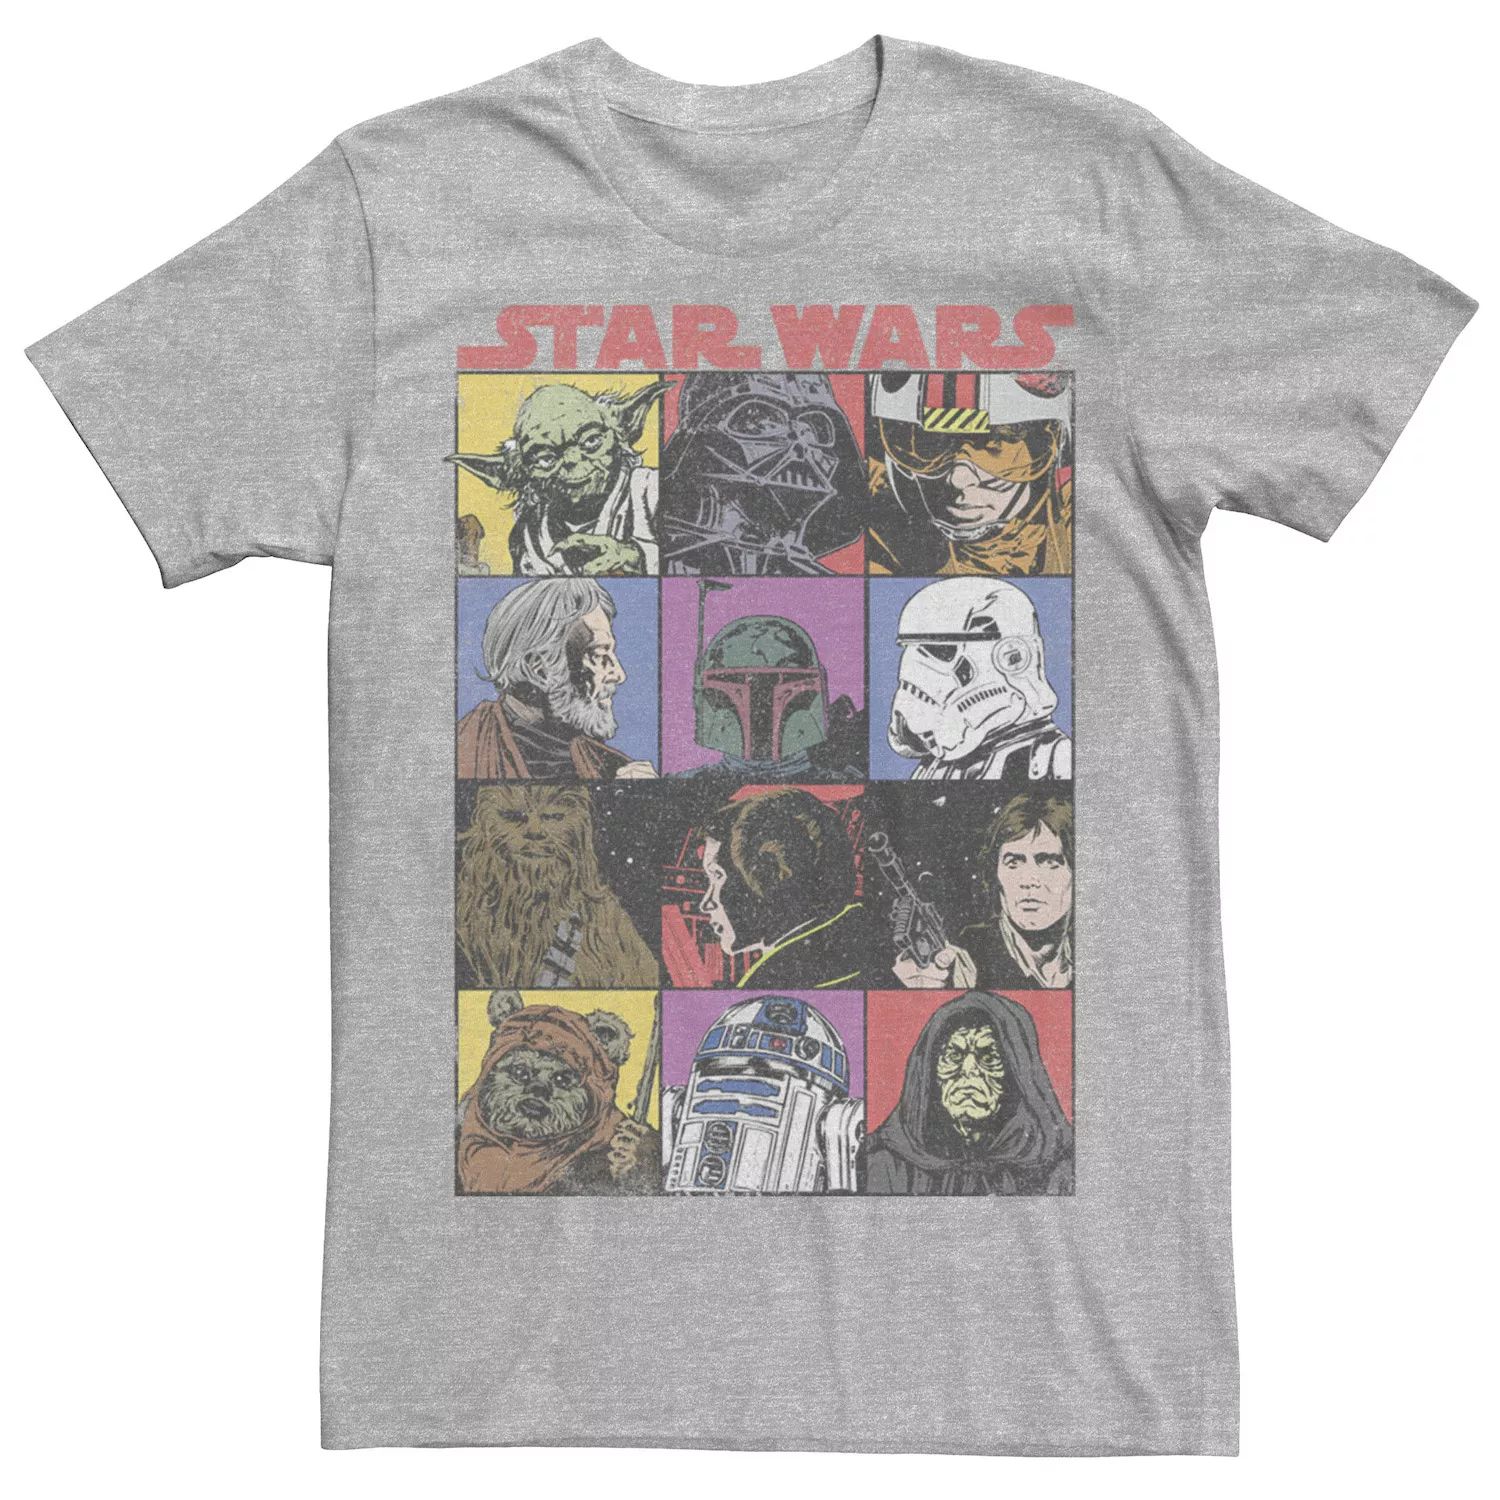 Мужская футболка с героями комиксов и героями мультфильмов Star Wars